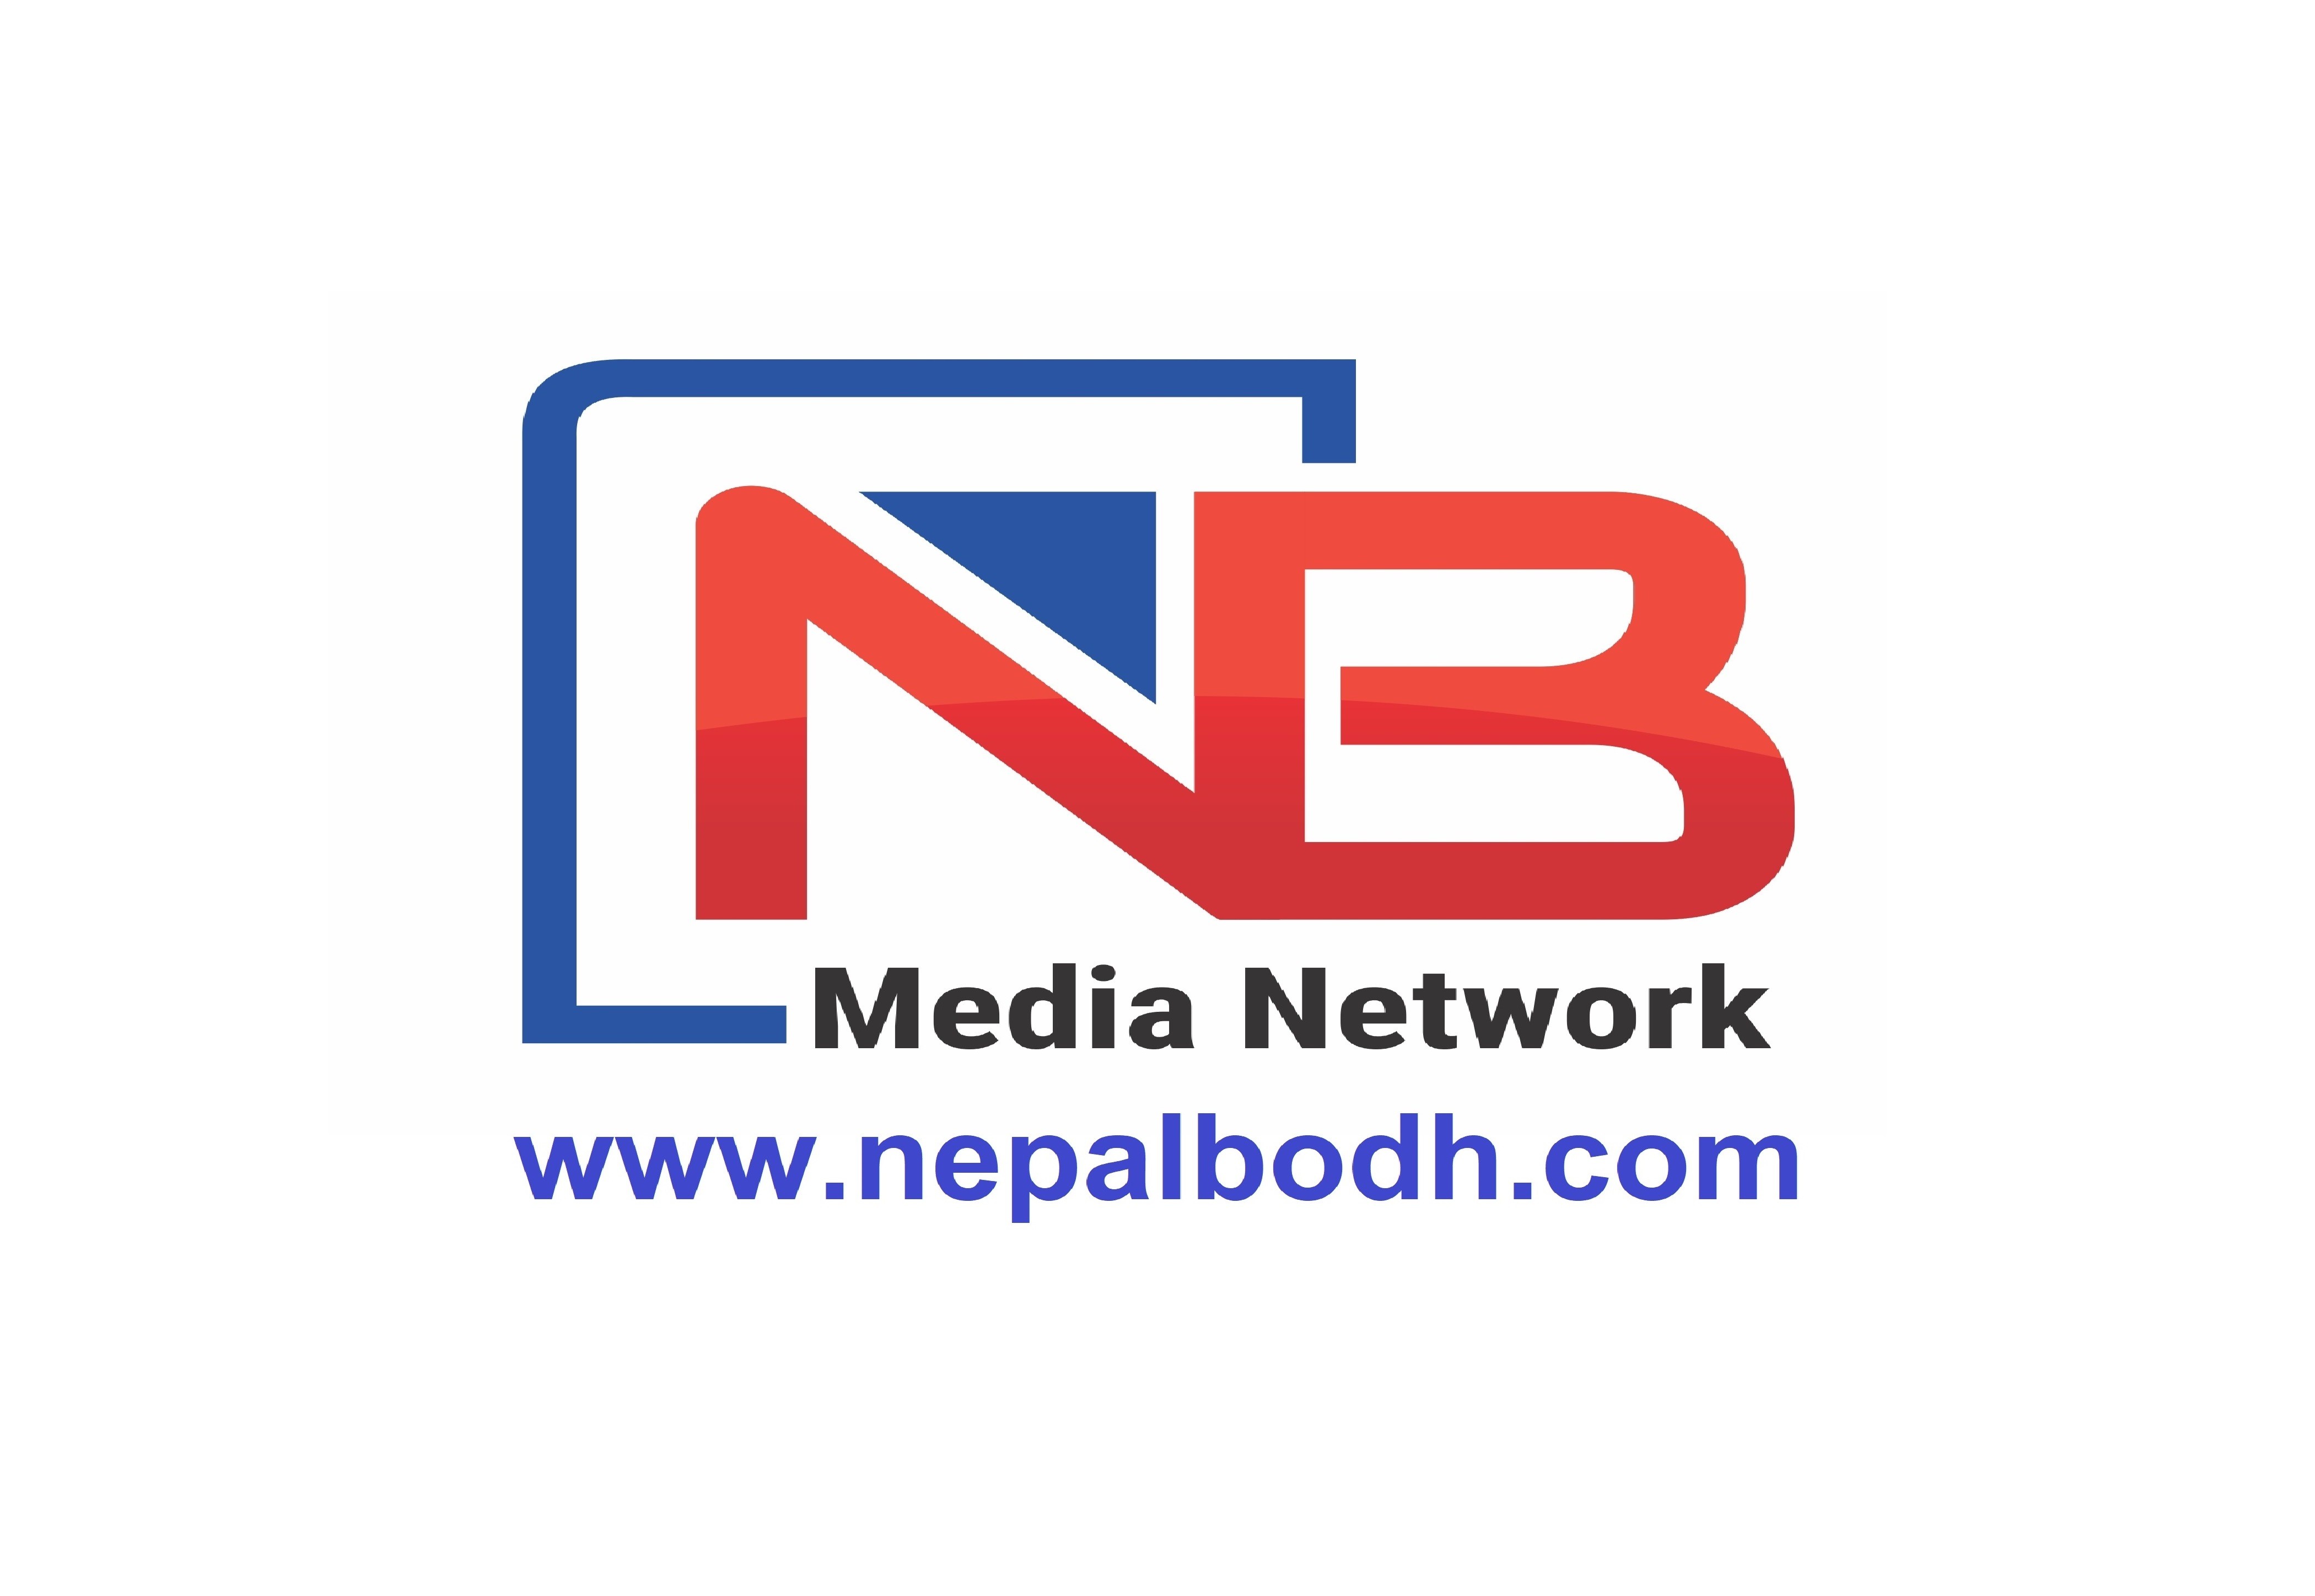 क्युआर कोडको प्रयोगलाई विस्तार गर्दै नेपाल प्रहरी